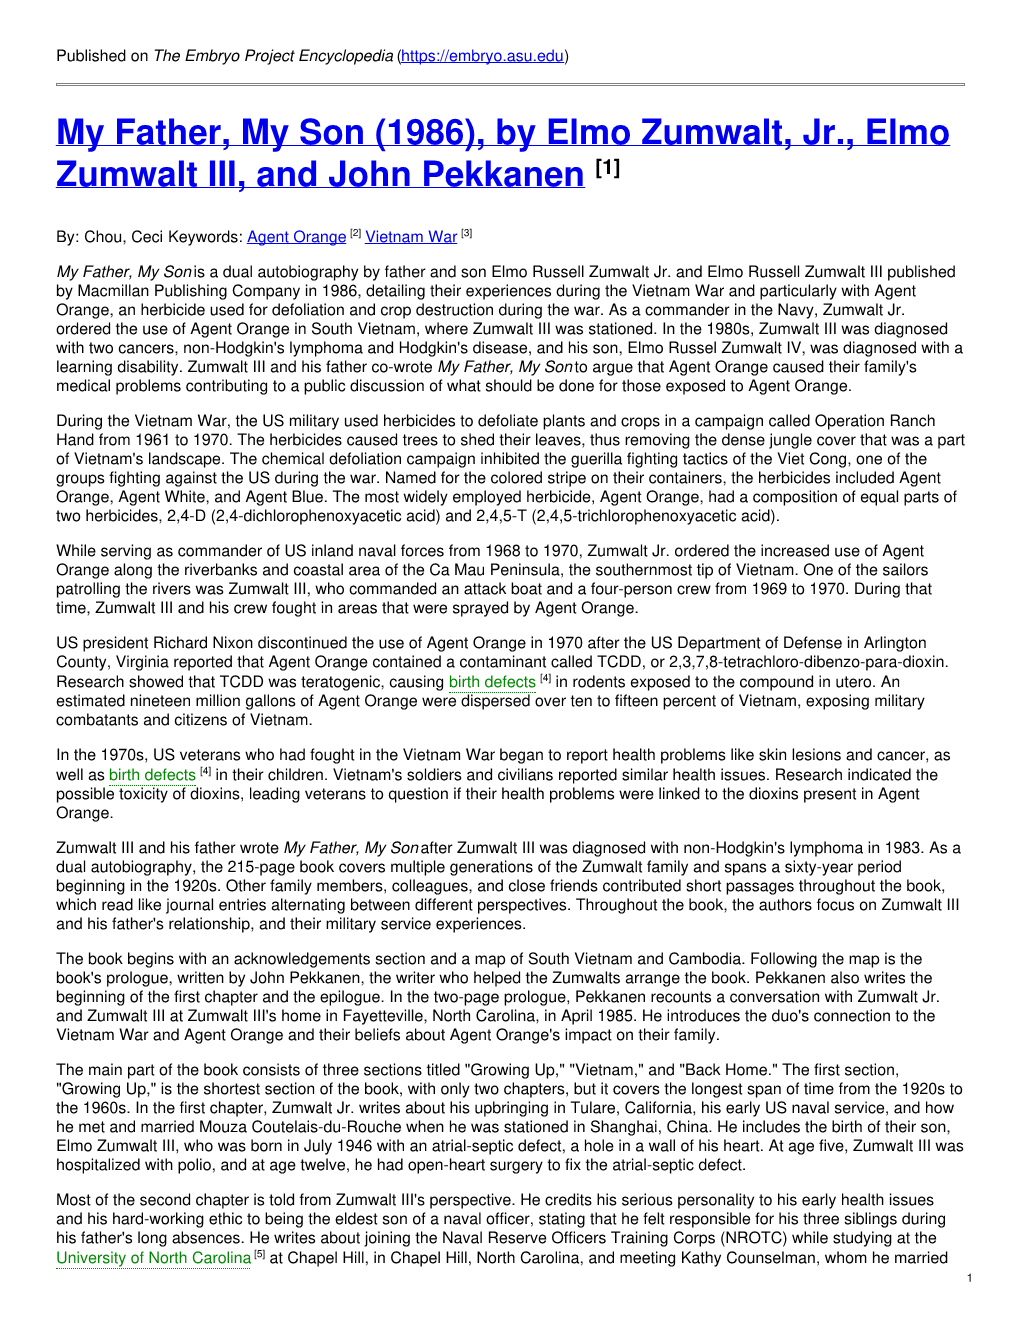 By Elmo Zumwalt, Jr., Elmo Zumwalt III, and John Pekkanen [1]